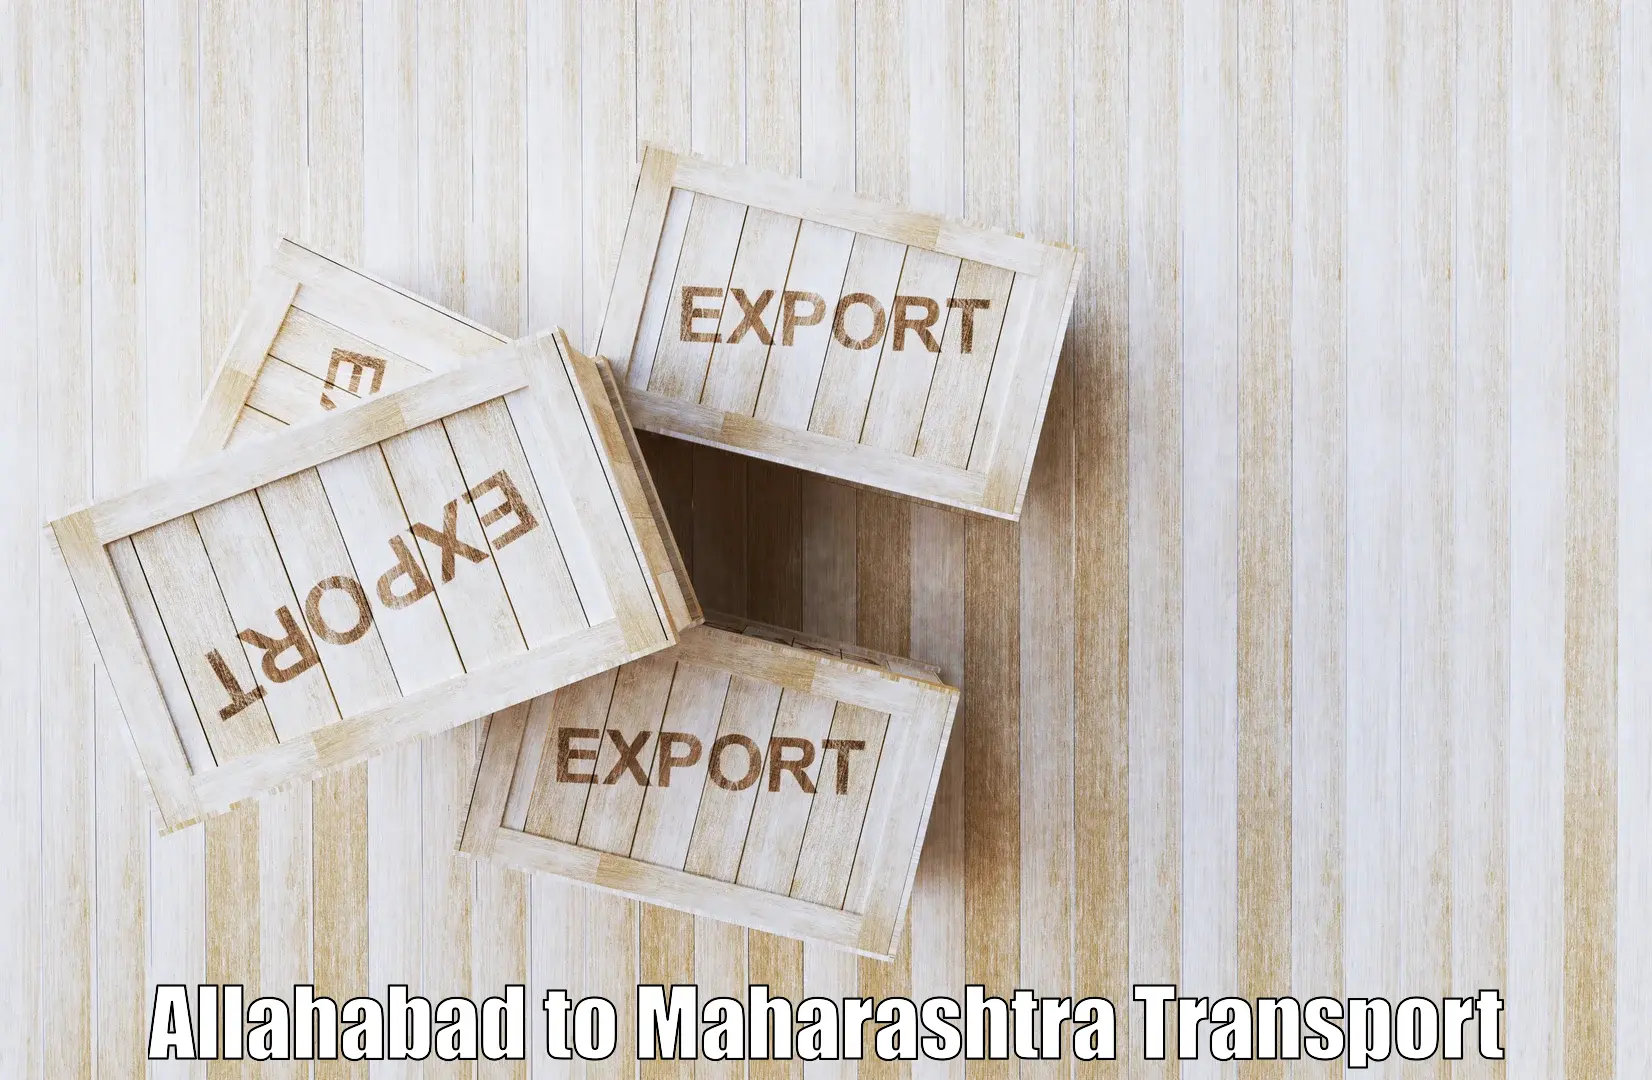 International cargo transportation services Allahabad to Raigarh Maharashtra